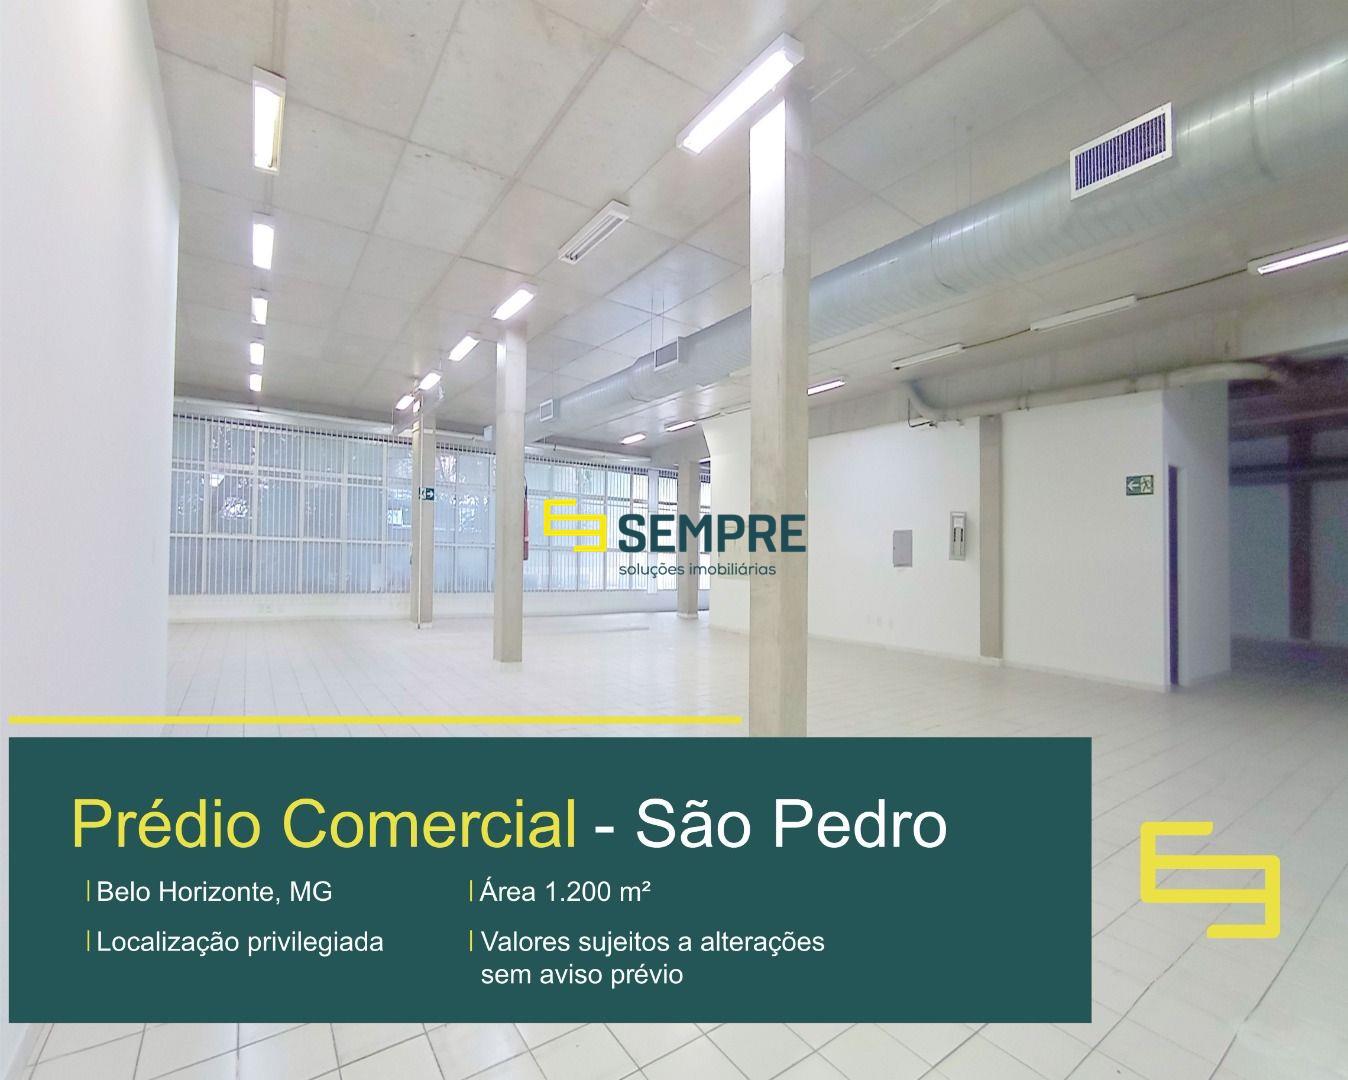 Aluguel de prédio comercial com 1200 m² no São Pedro em BH.